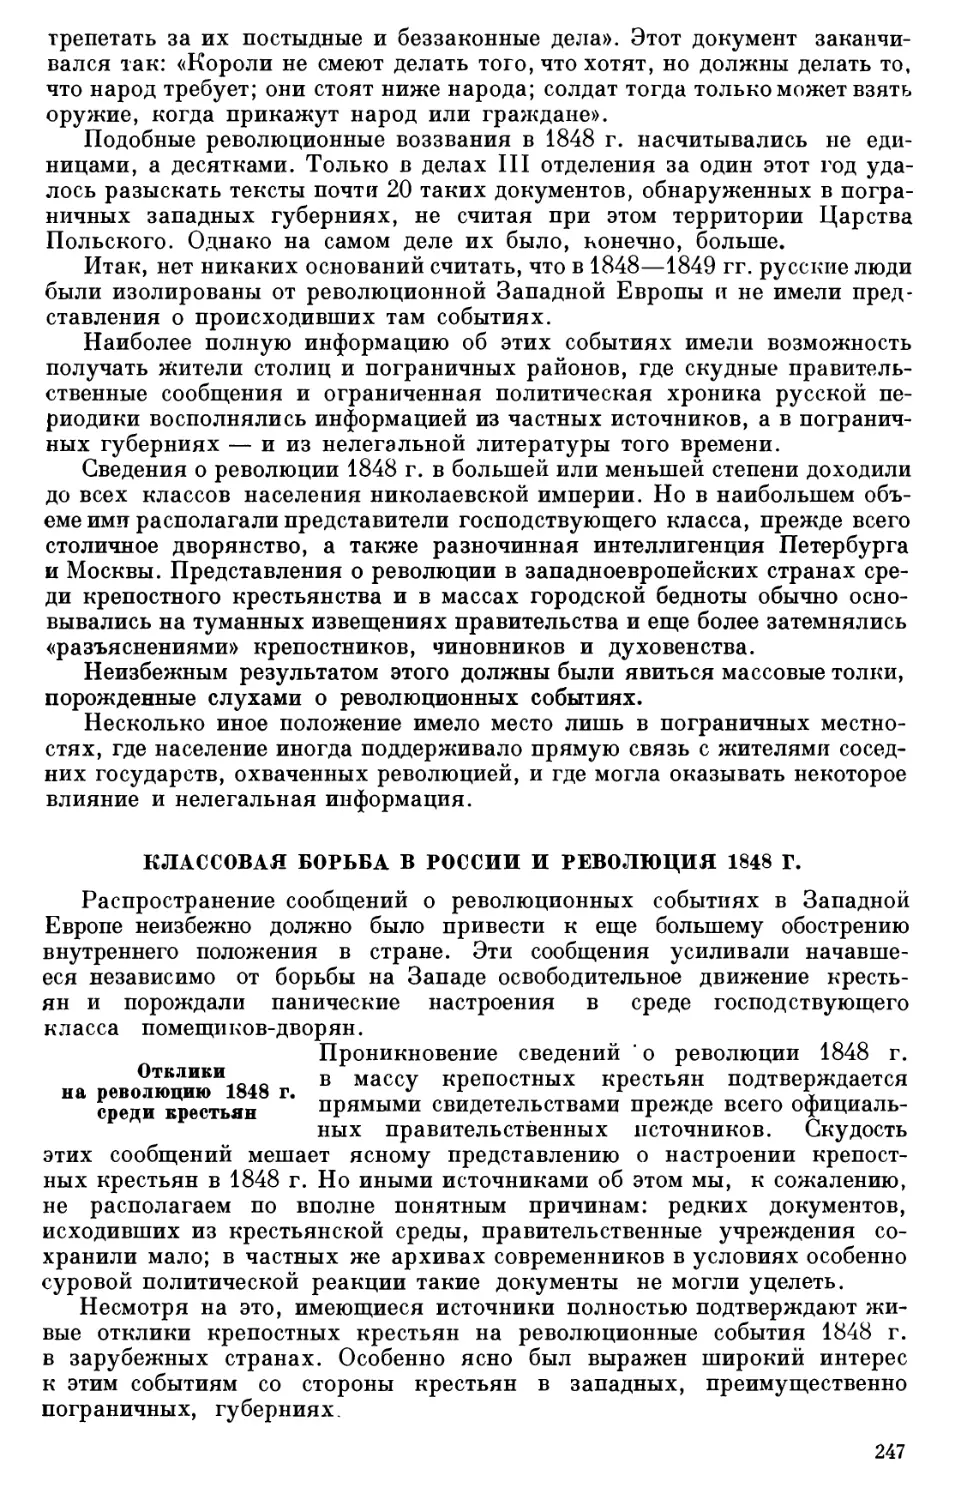 КЛАССОВАЯ БОРЬБА В РОССИИ И РЕВОЛЮЦИЯ 1848 г.